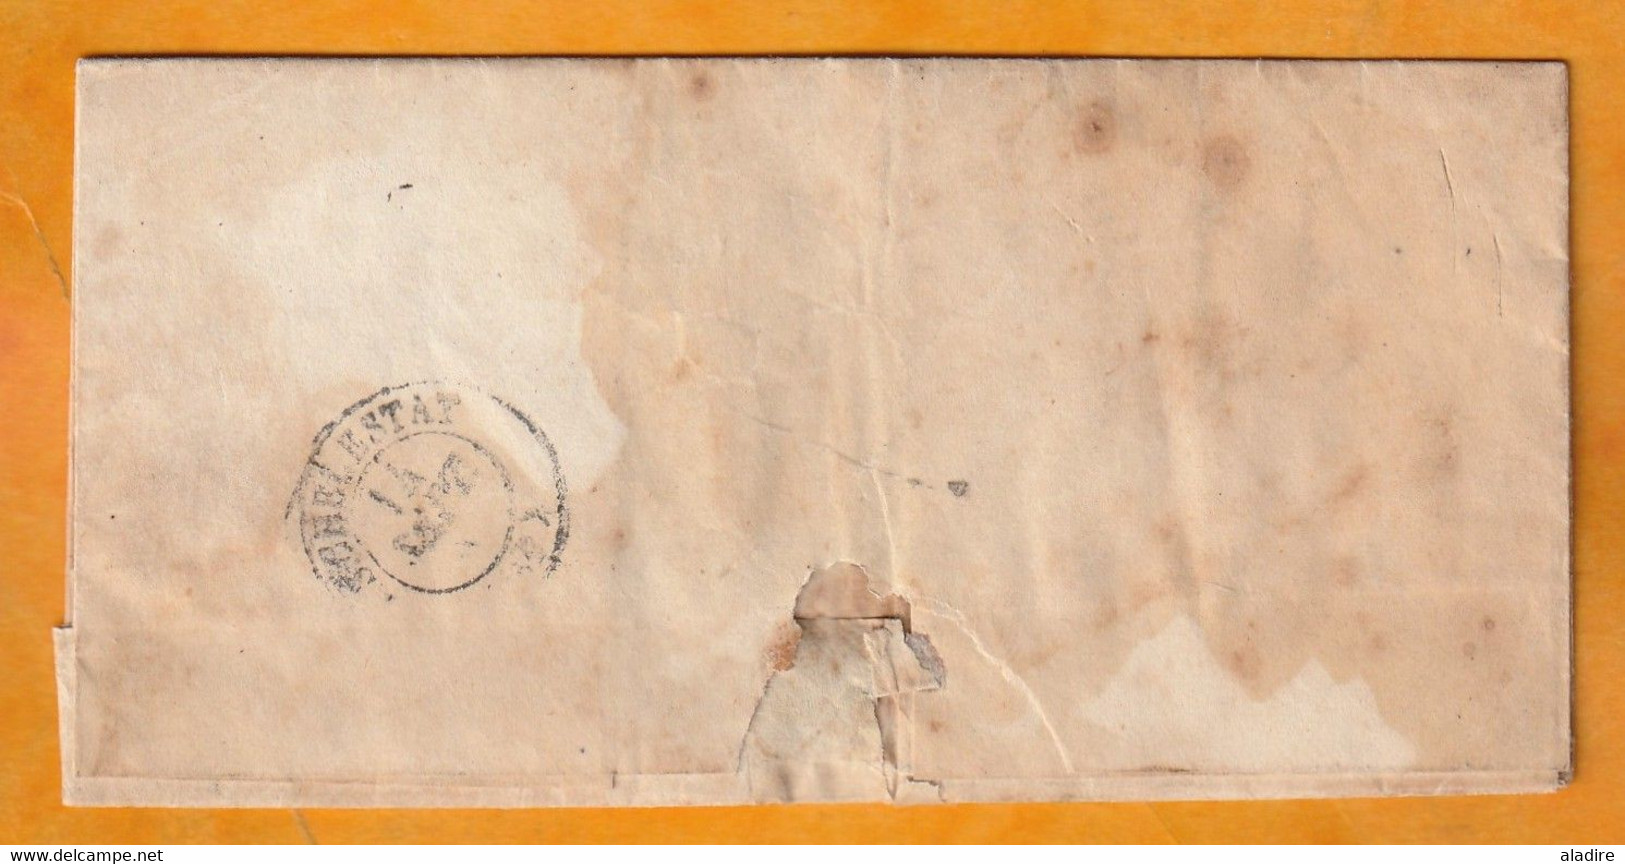 1845 - Lettre Pliée Avec Corresp Famil  De Benfeld Cachet Fleurons Simples Vers Sélestat - Cad Arrivée - Taxe  2 - 1801-1848: Précurseurs XIX